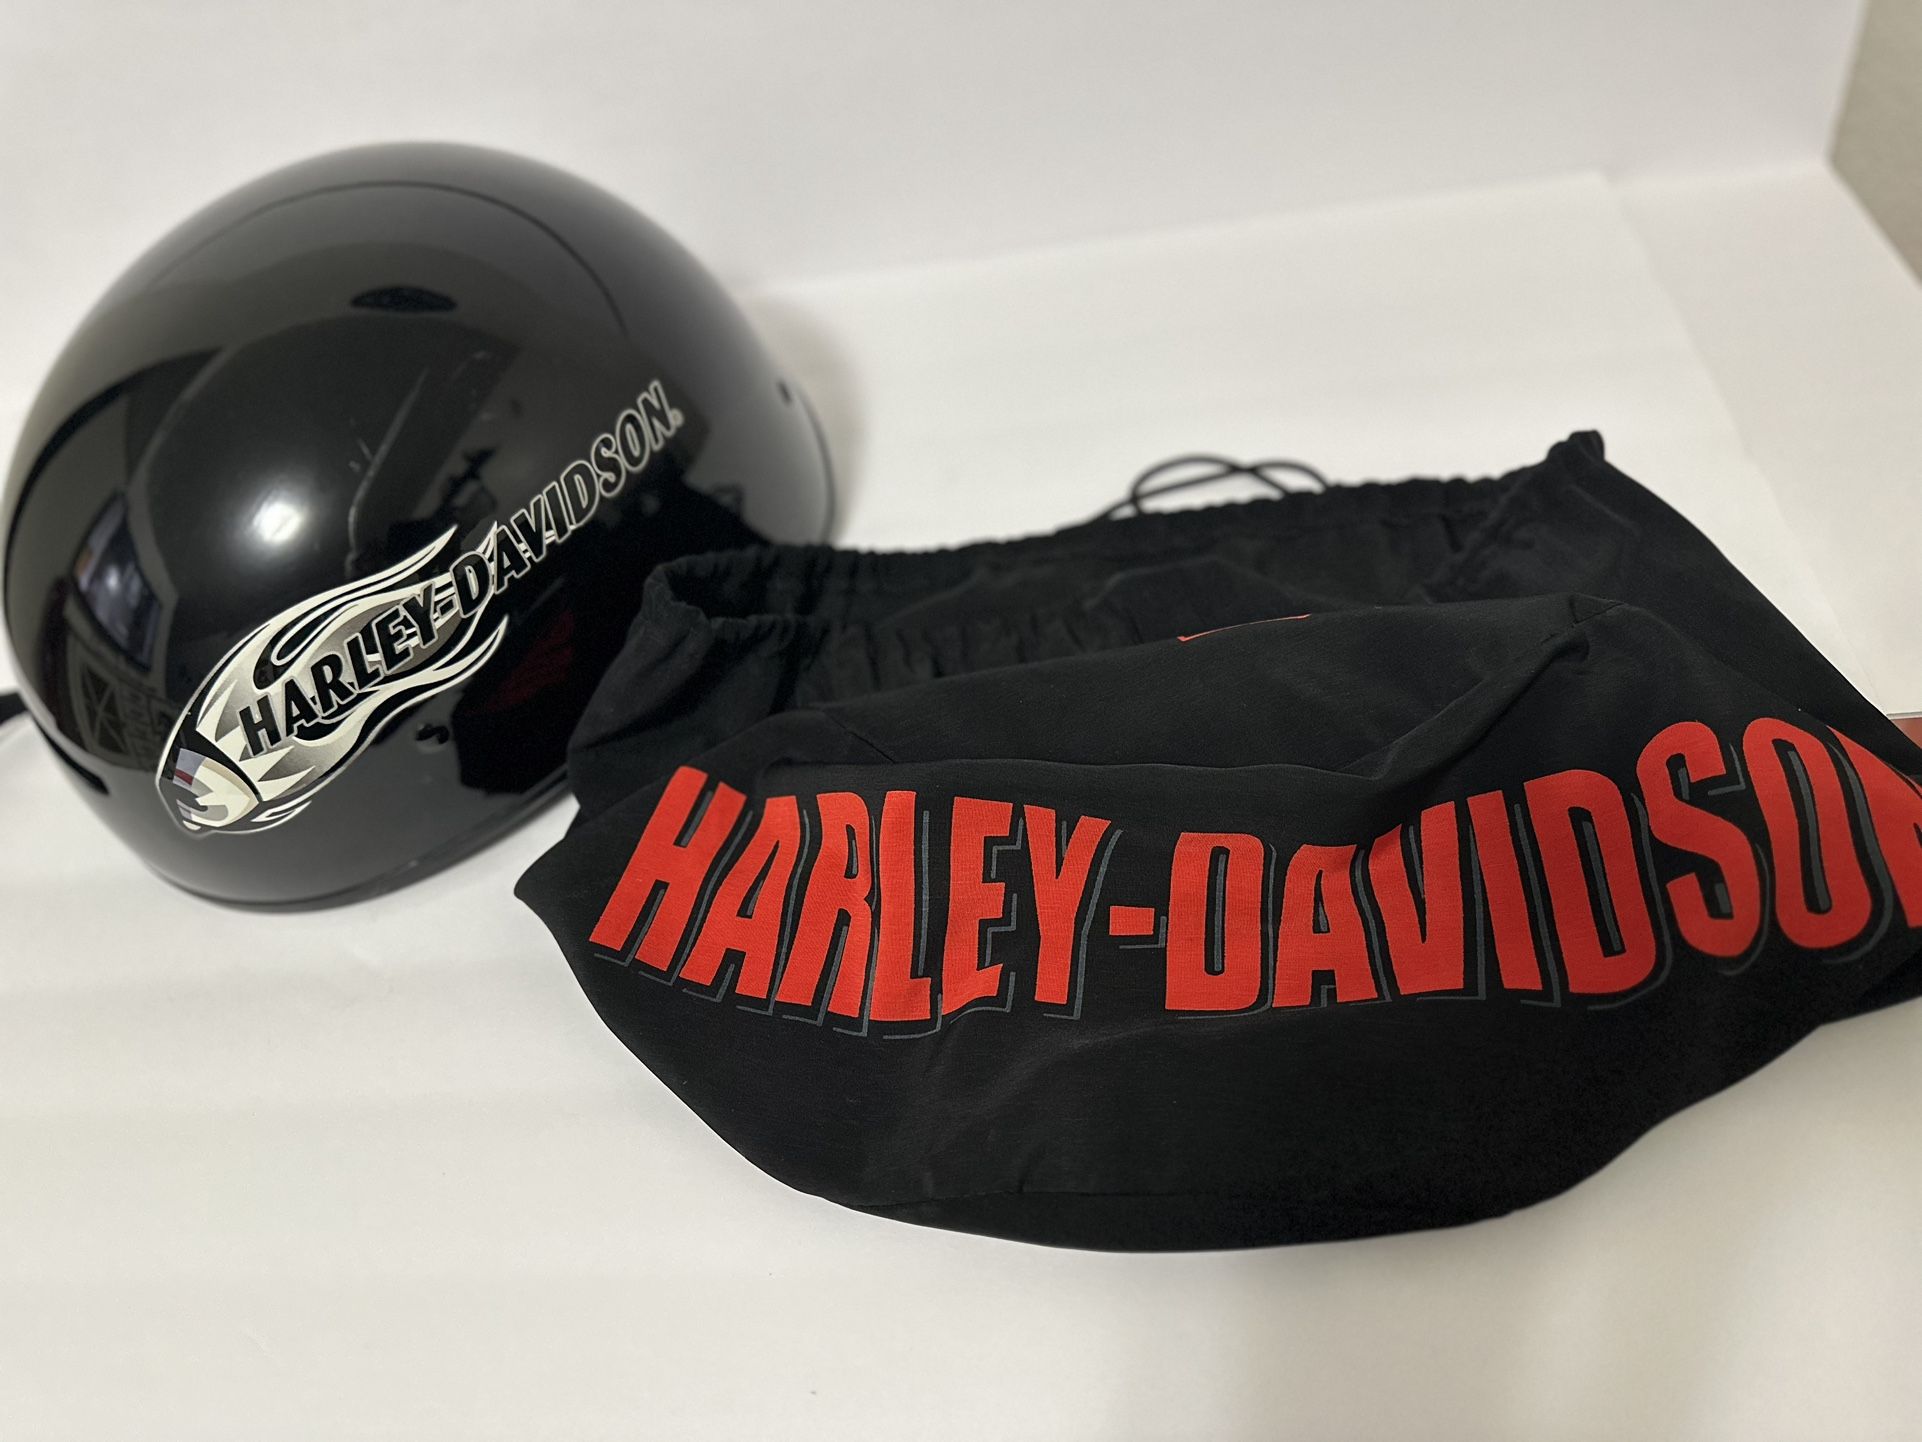 Harley Davidson Helmet With Carry Bag